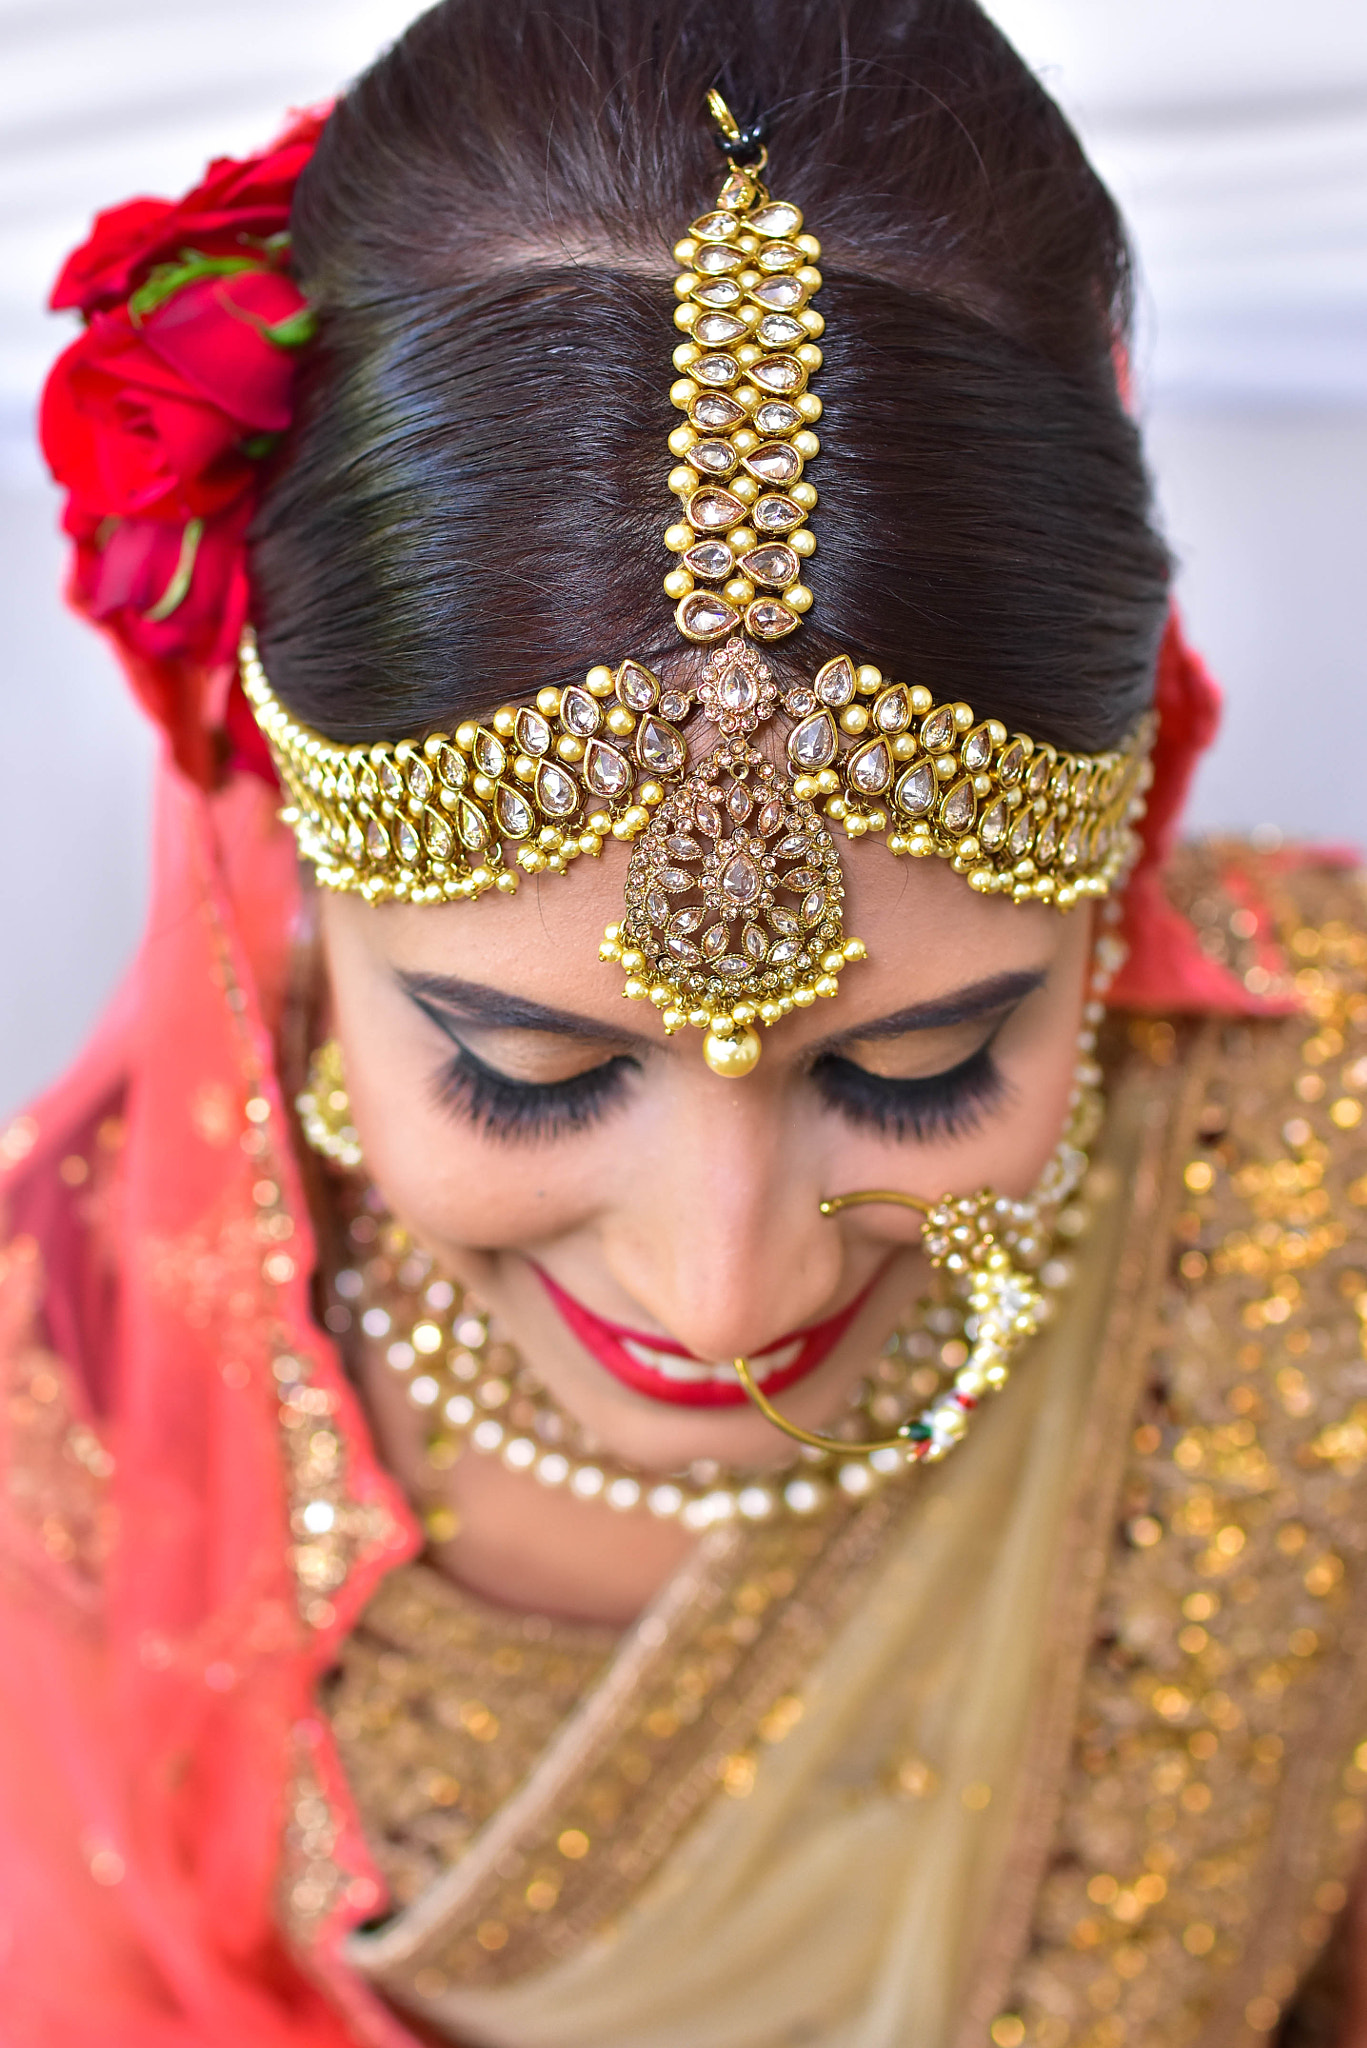 Nikon D7200 + AF-S DX Zoom-Nikkor 18-55mm f/3.5-5.6G ED sample photo. Shilpa on her wedding day photography